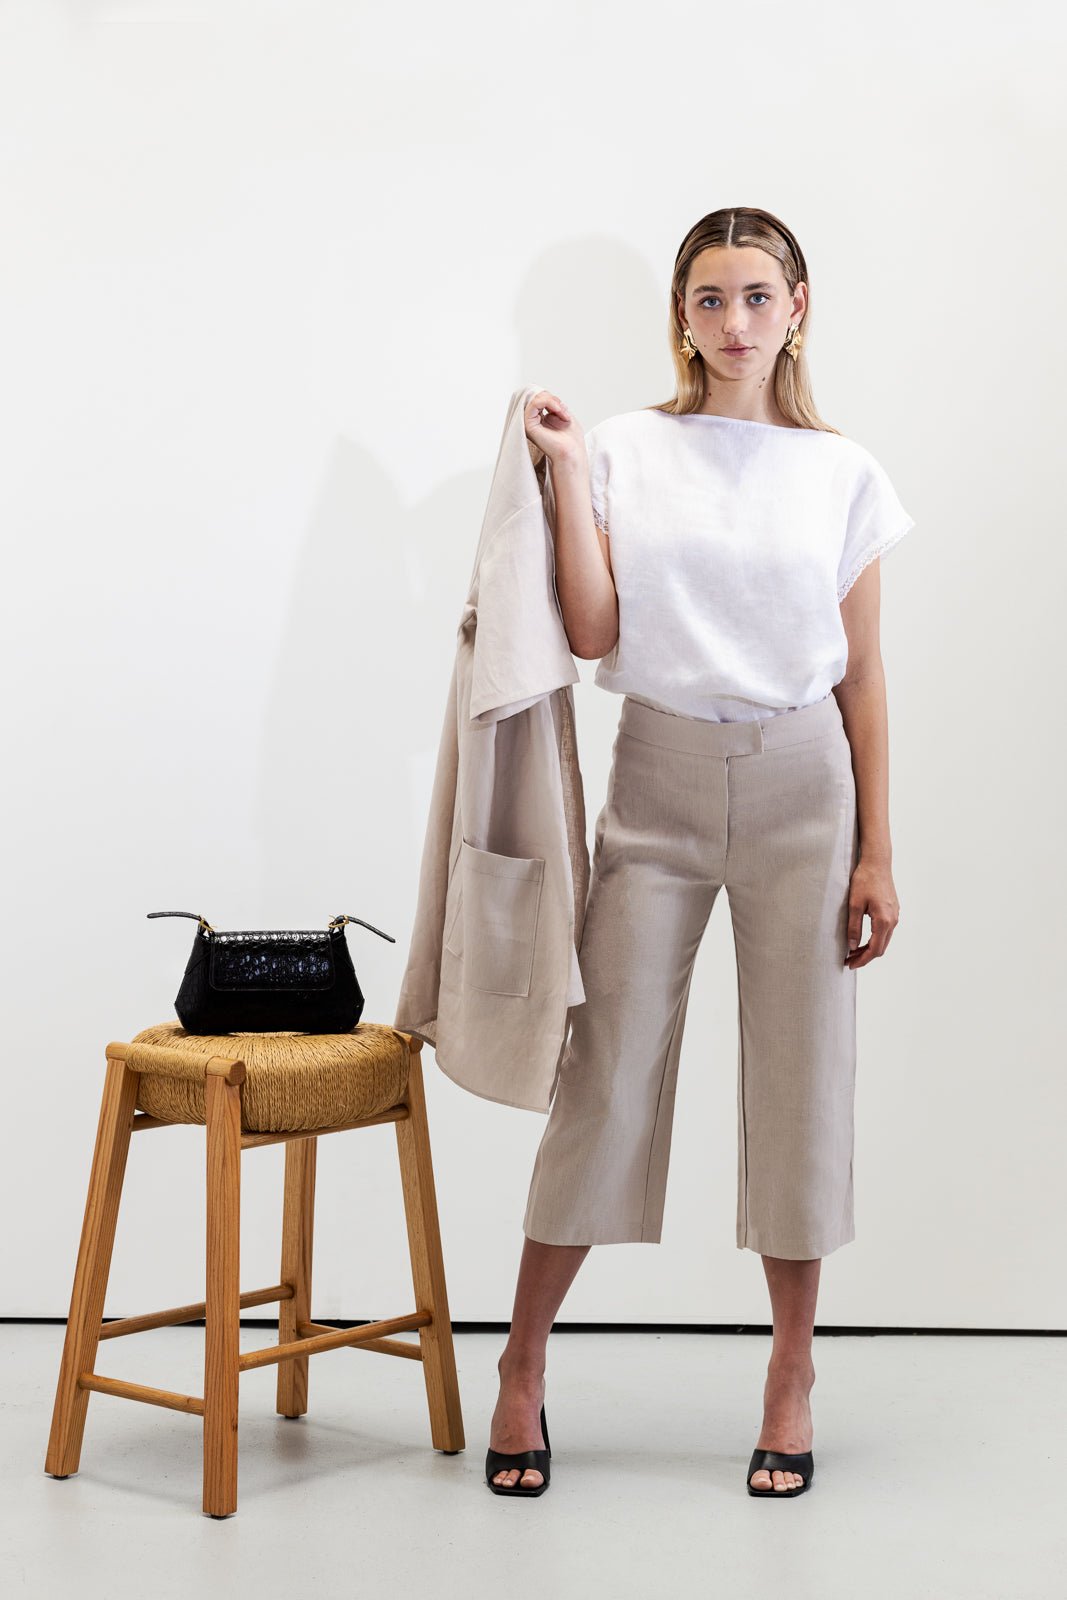 Èze Lace Trim Top - VOUS Contemporary Clothing